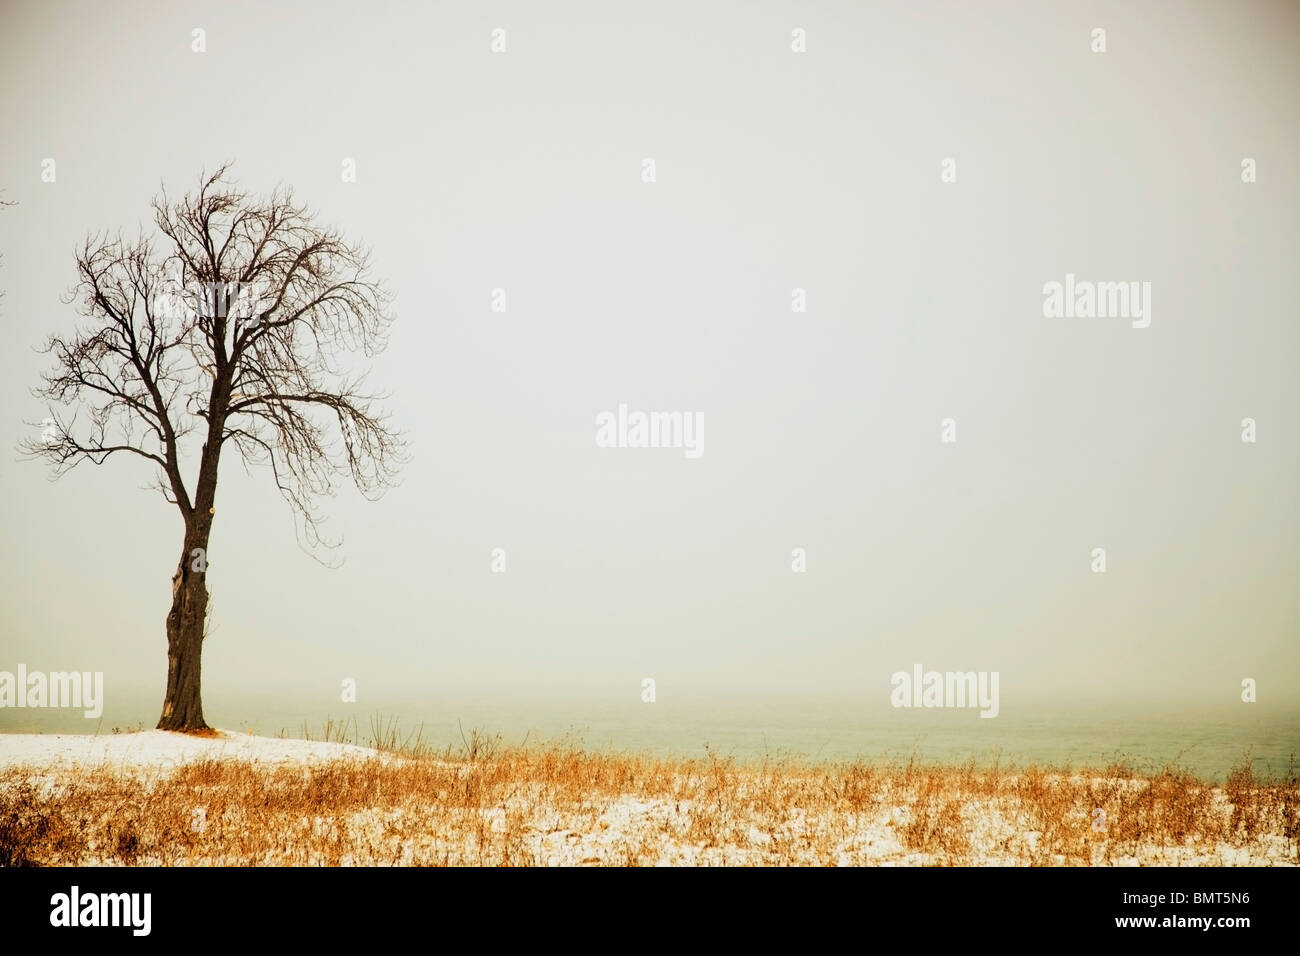 Jordan, Ontario, Canada; A Tree Along The Shore Of Lake Ontario With Some Snow Stock Photo